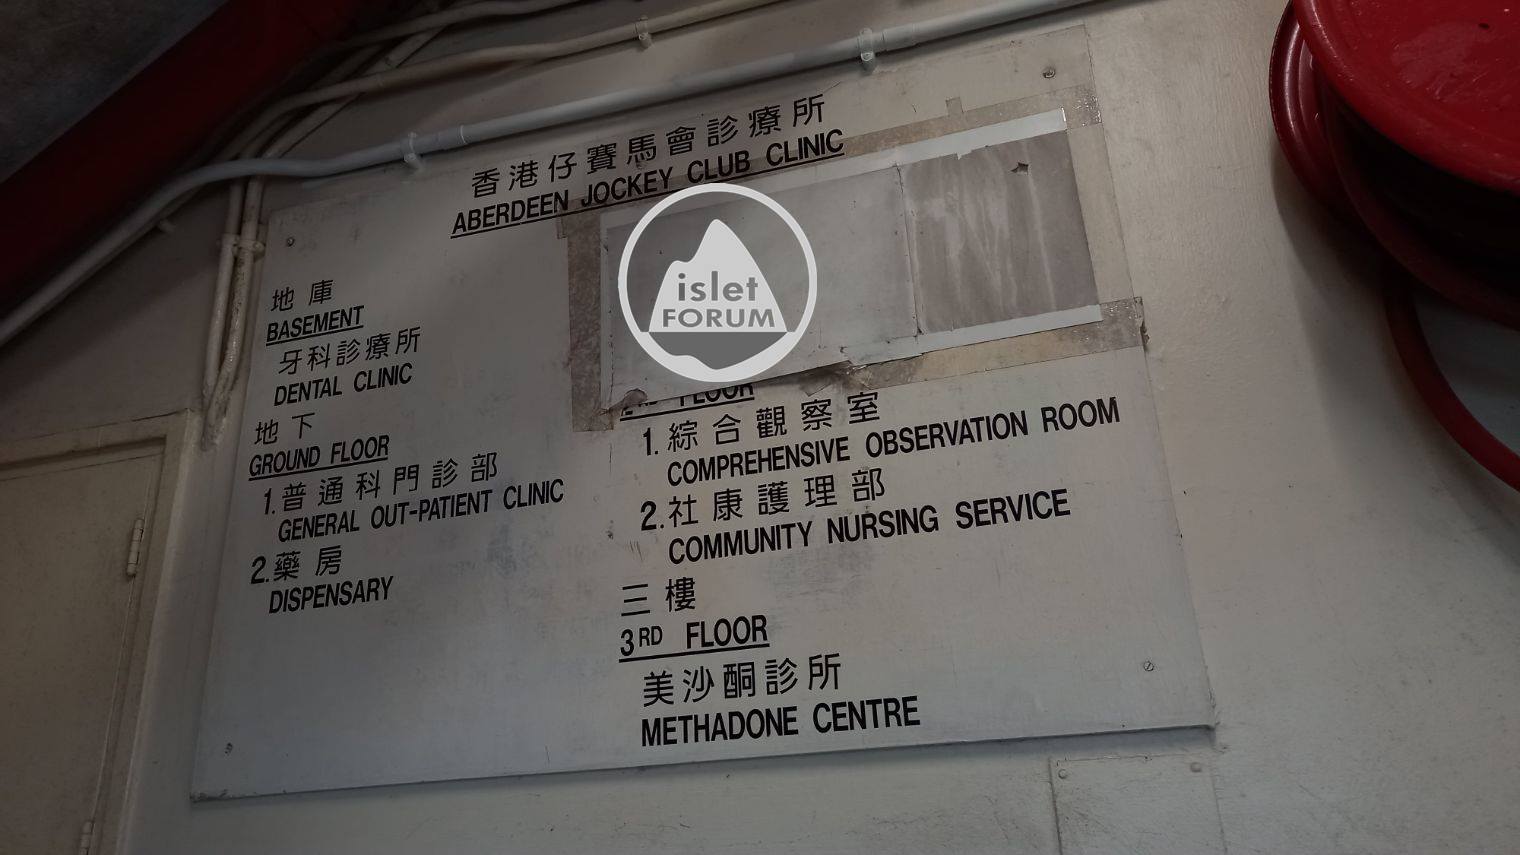 香港仔賽馬會普通科門診診所 Aberdeen Jockey Club Clinic (3).jpg